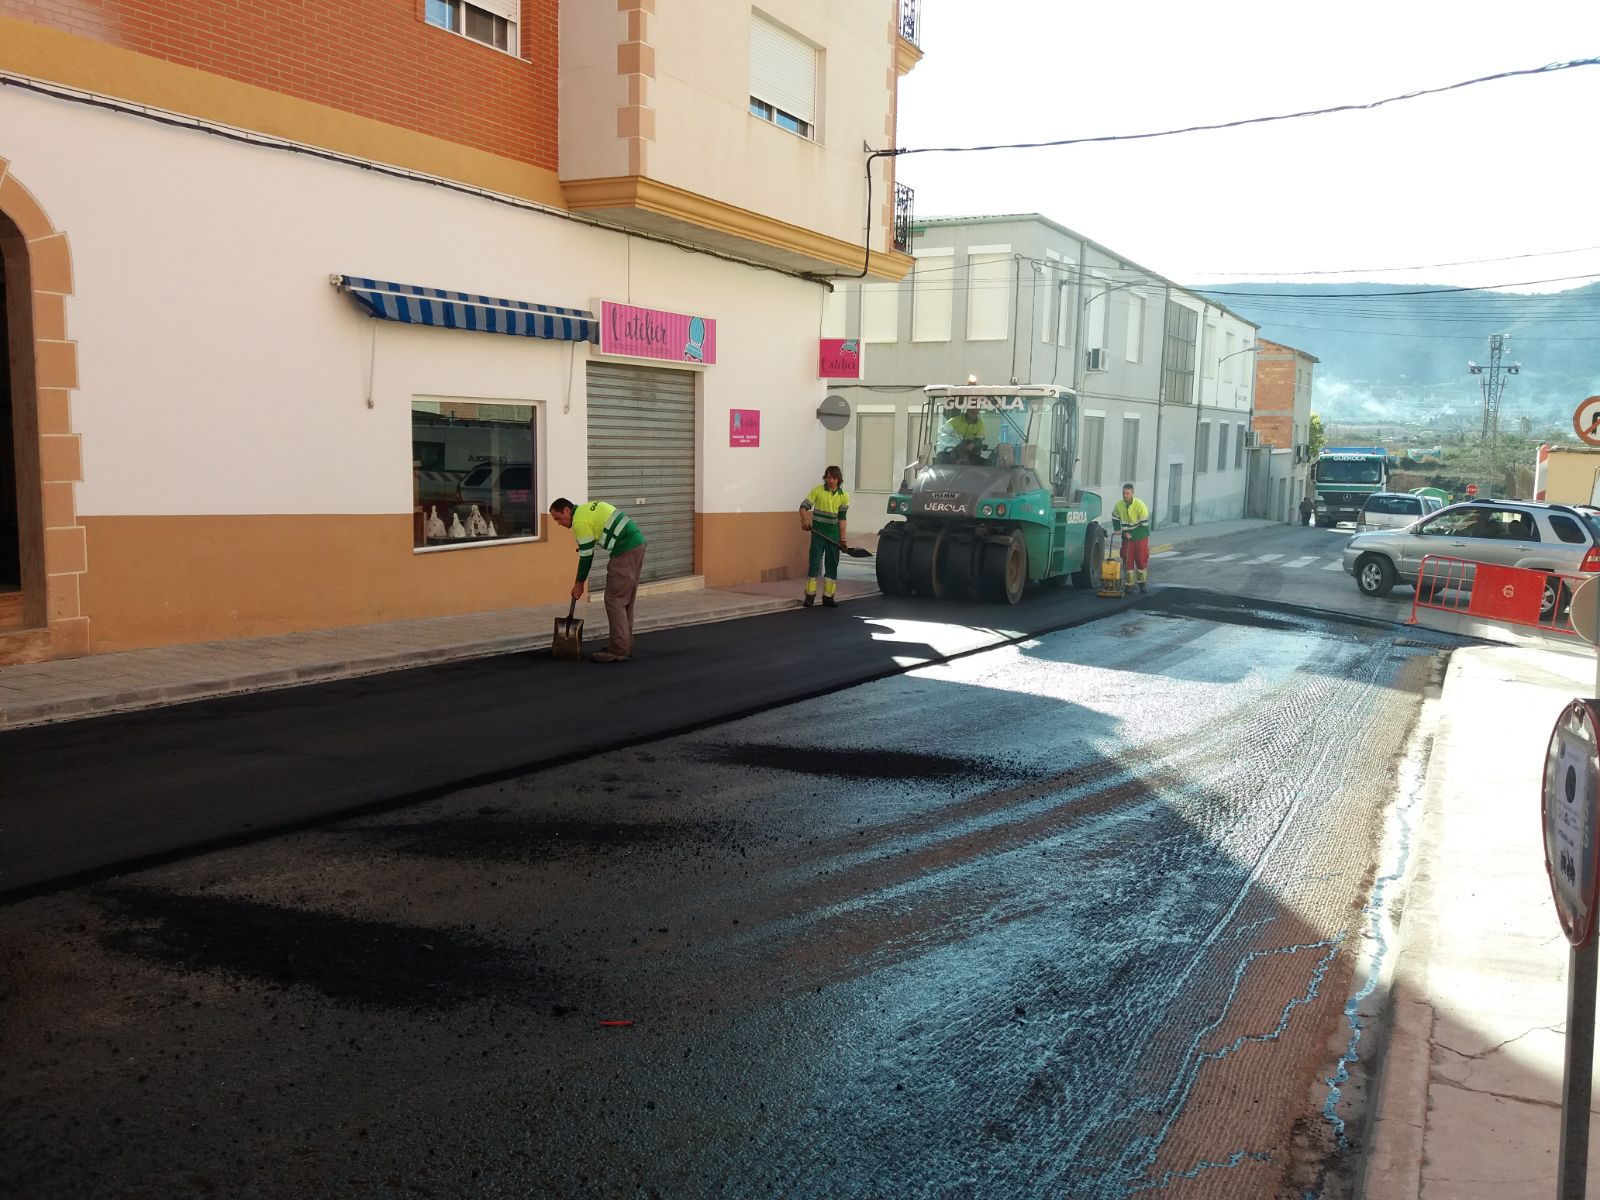 2018.03.16 Finalitza l'asfaltat dels carrers Sant Nicolau i Ausiàs March